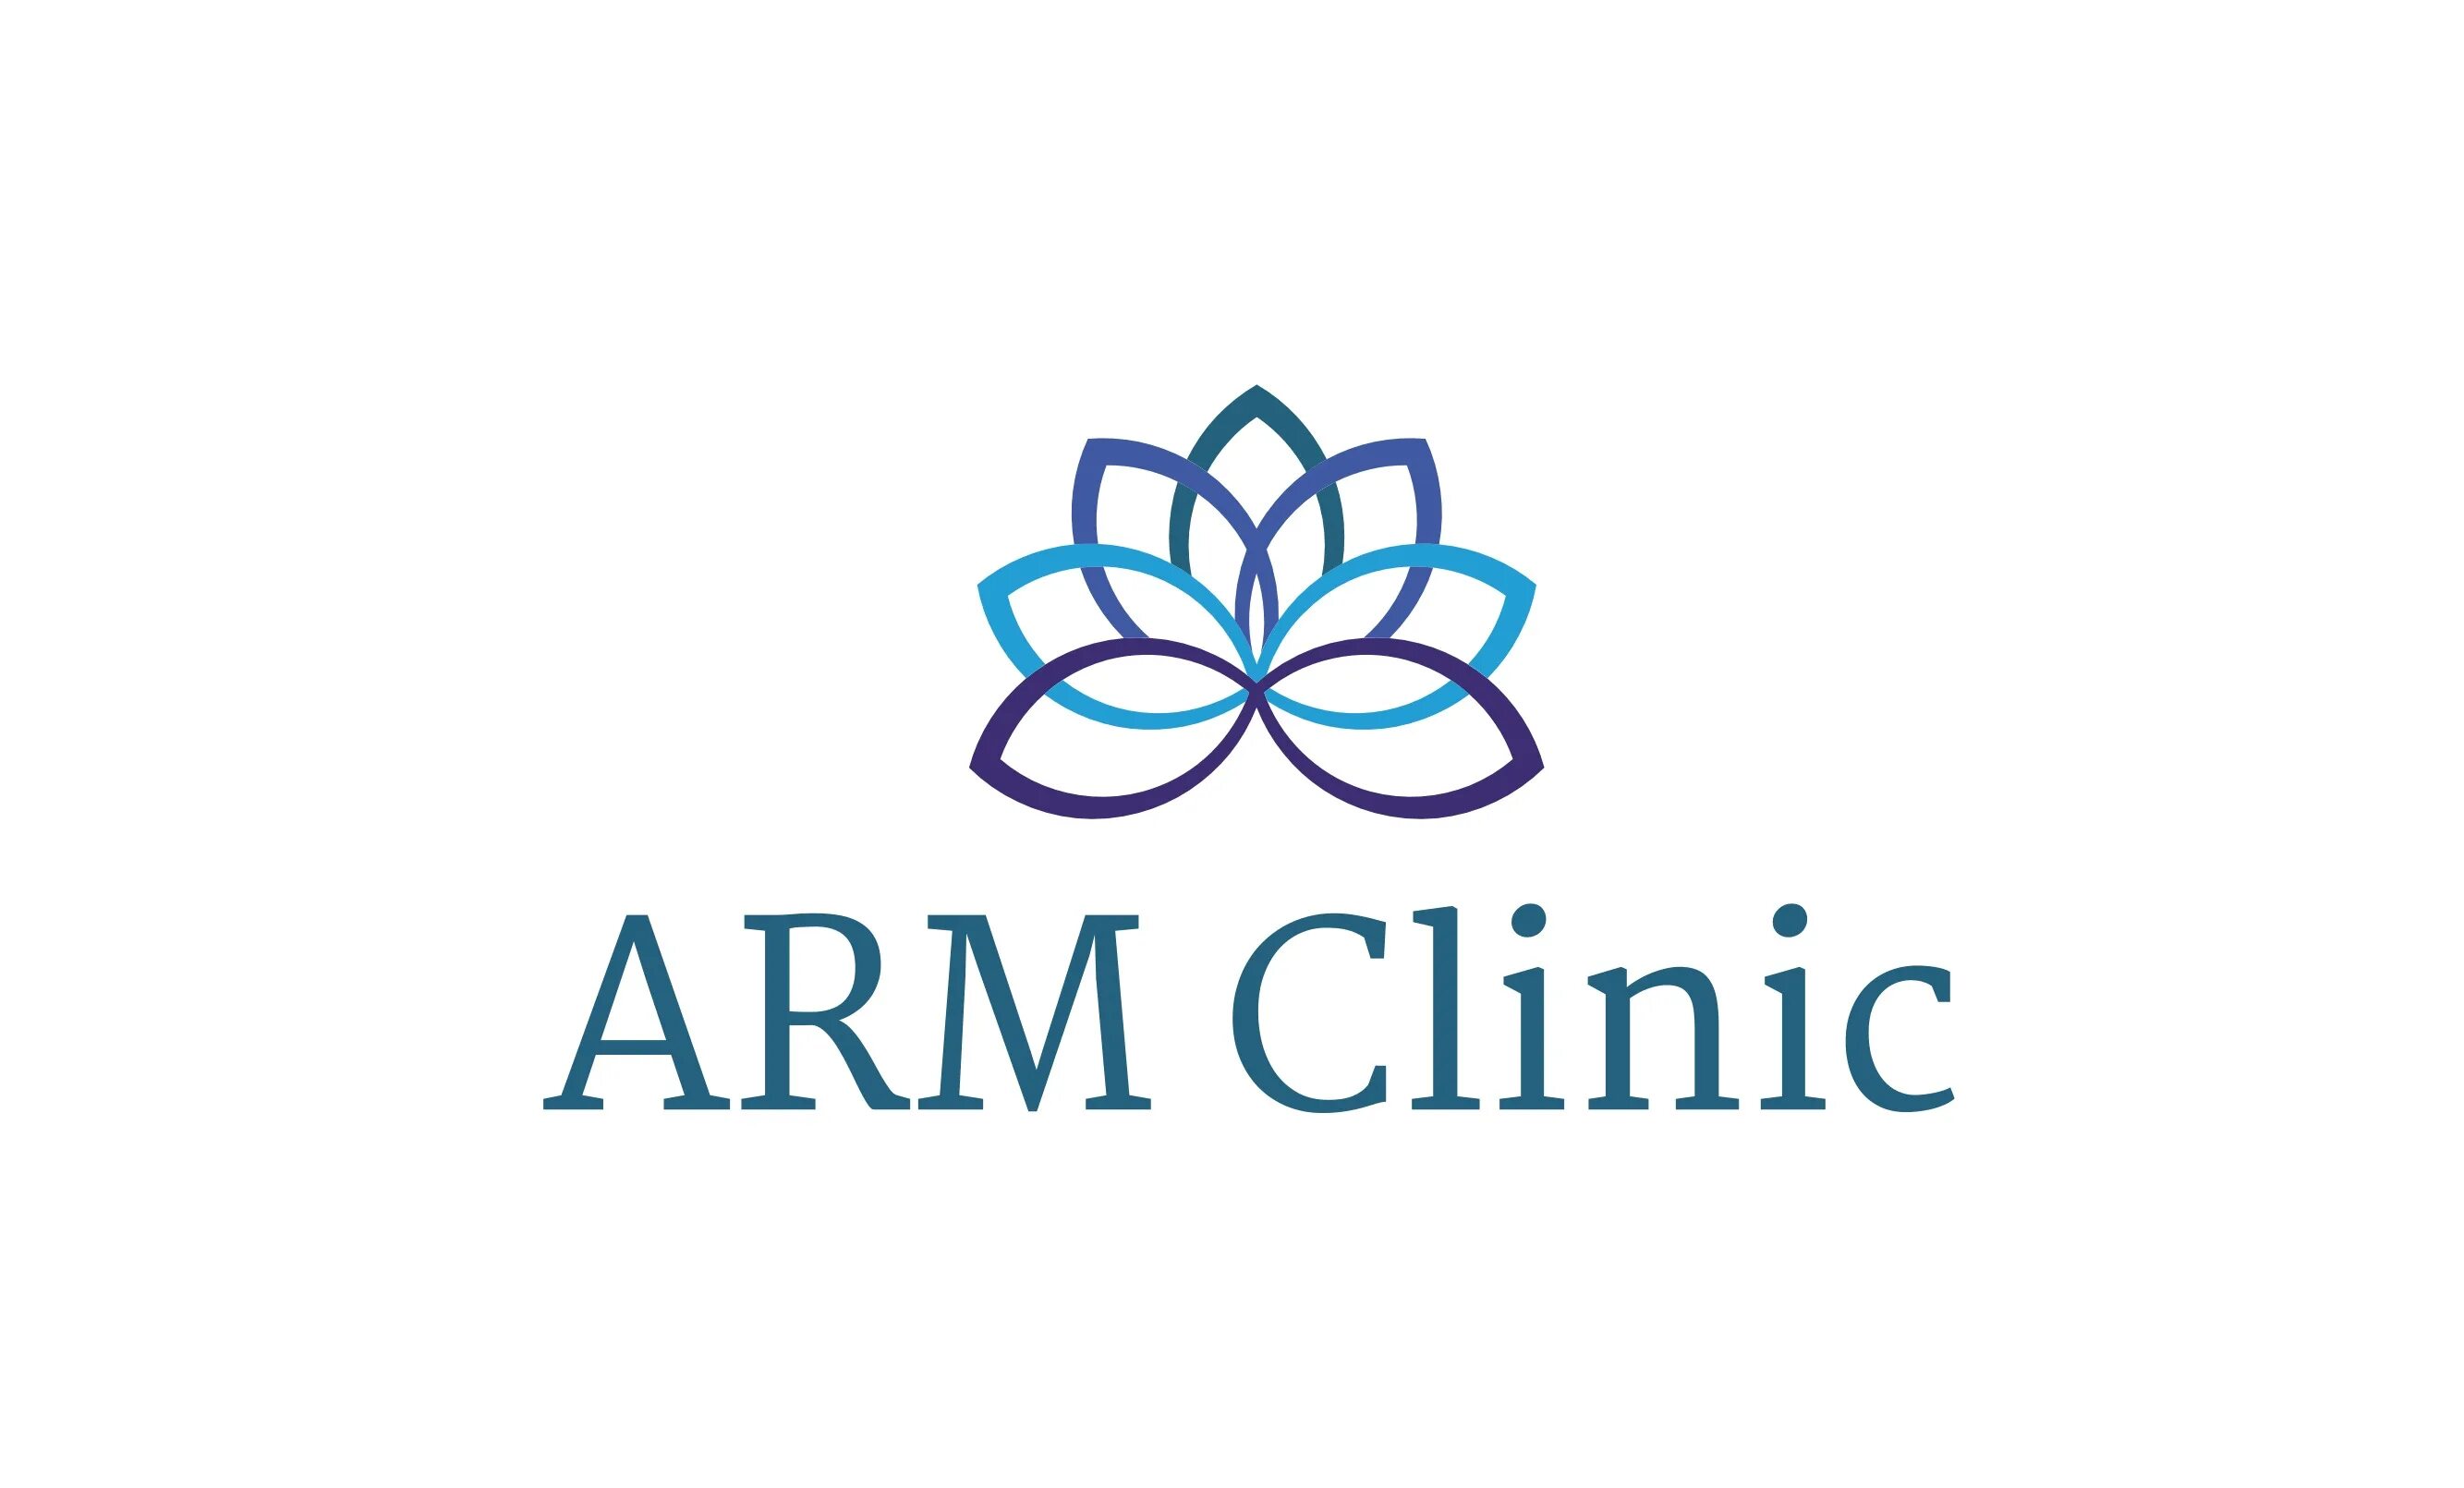 Арм клиник. АРМ поликлиника логотип. АРМ поликлиника последняя версия. АРМ поликлиника стоматология.